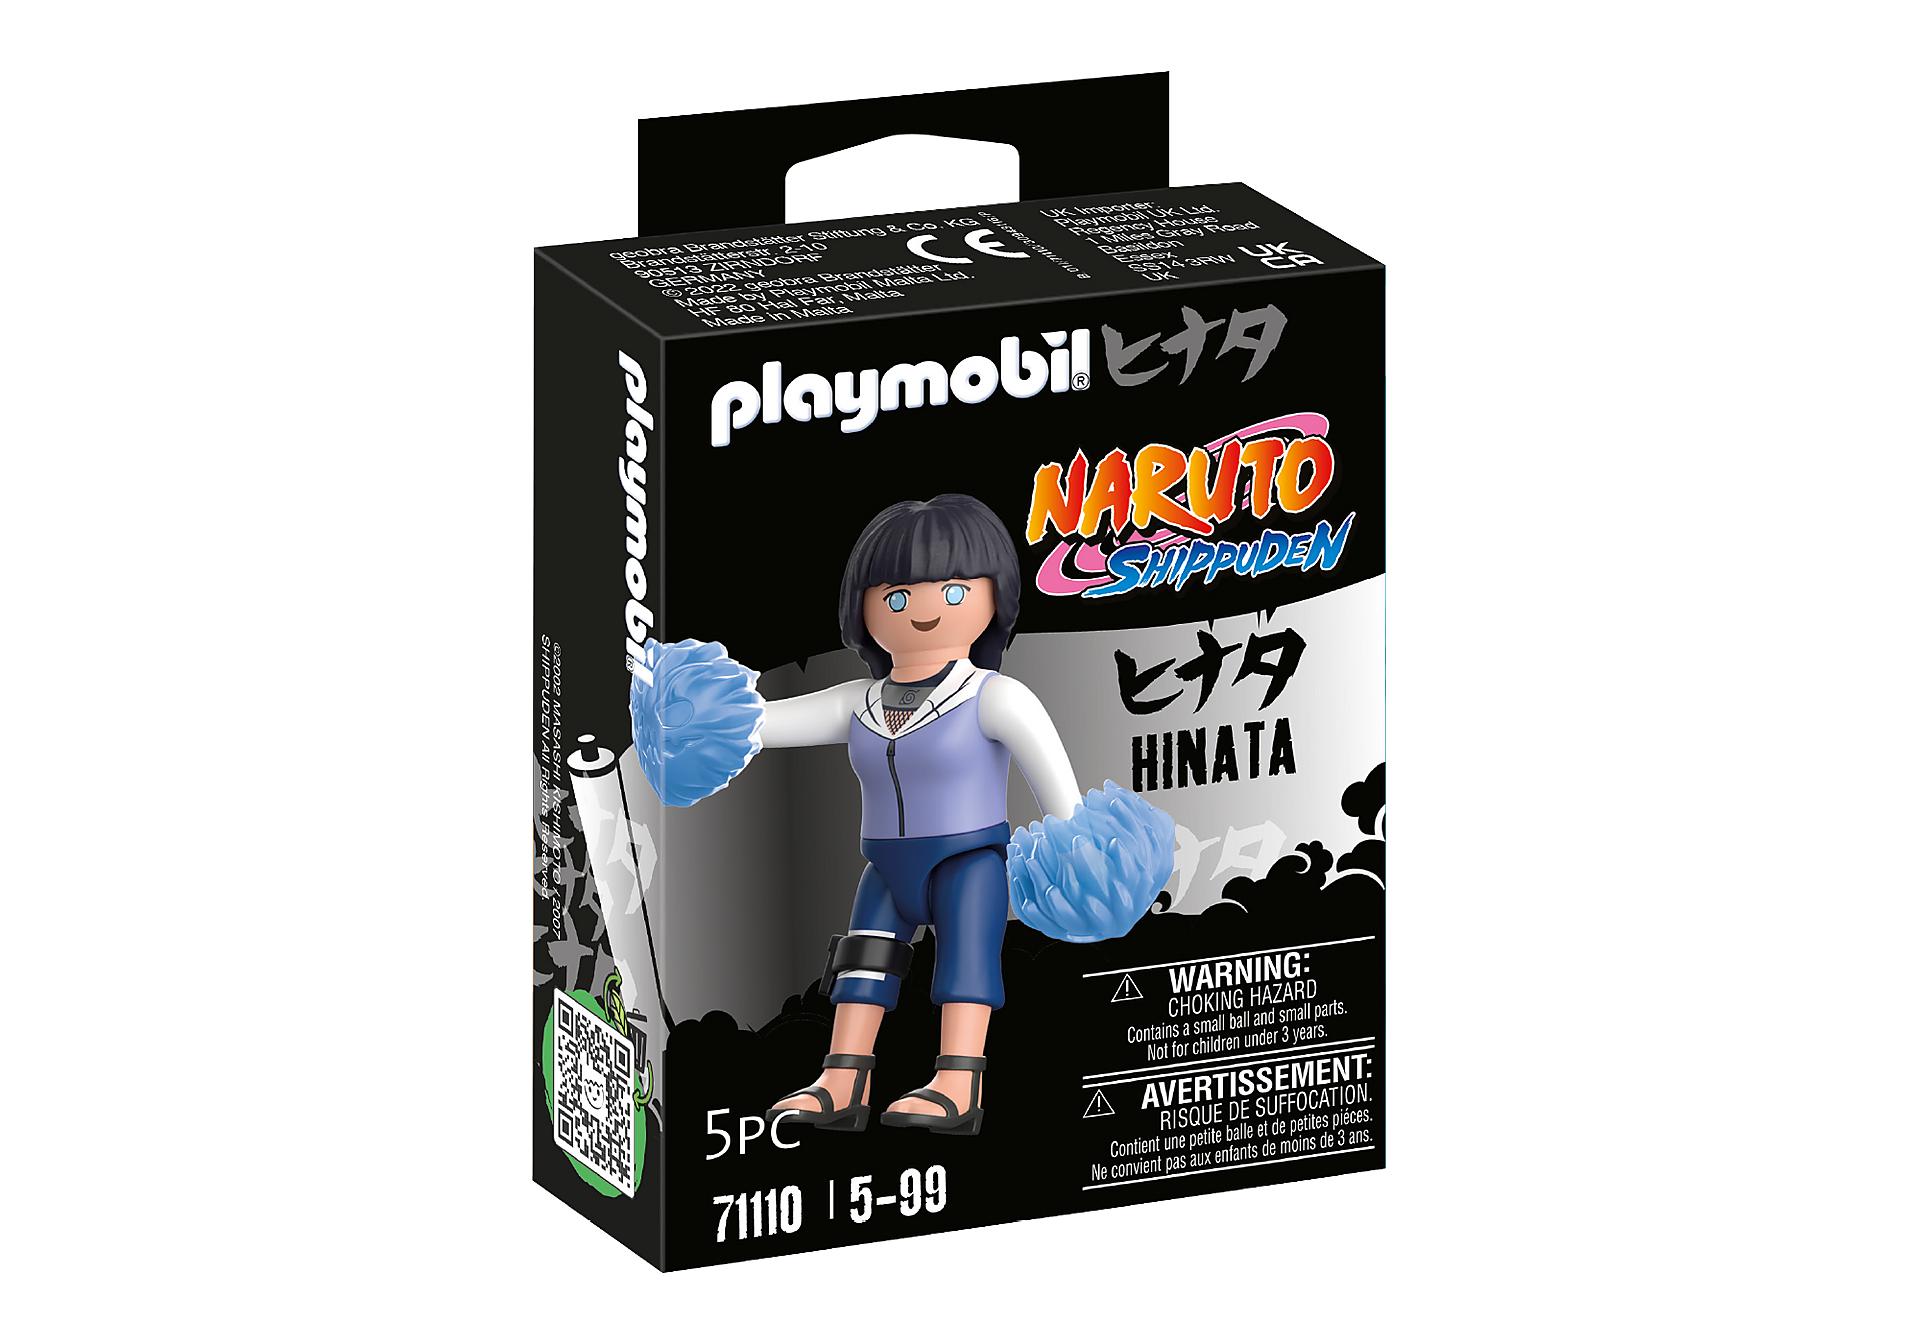 PLAYMOBIL 71110 HINATA (NARUTO)